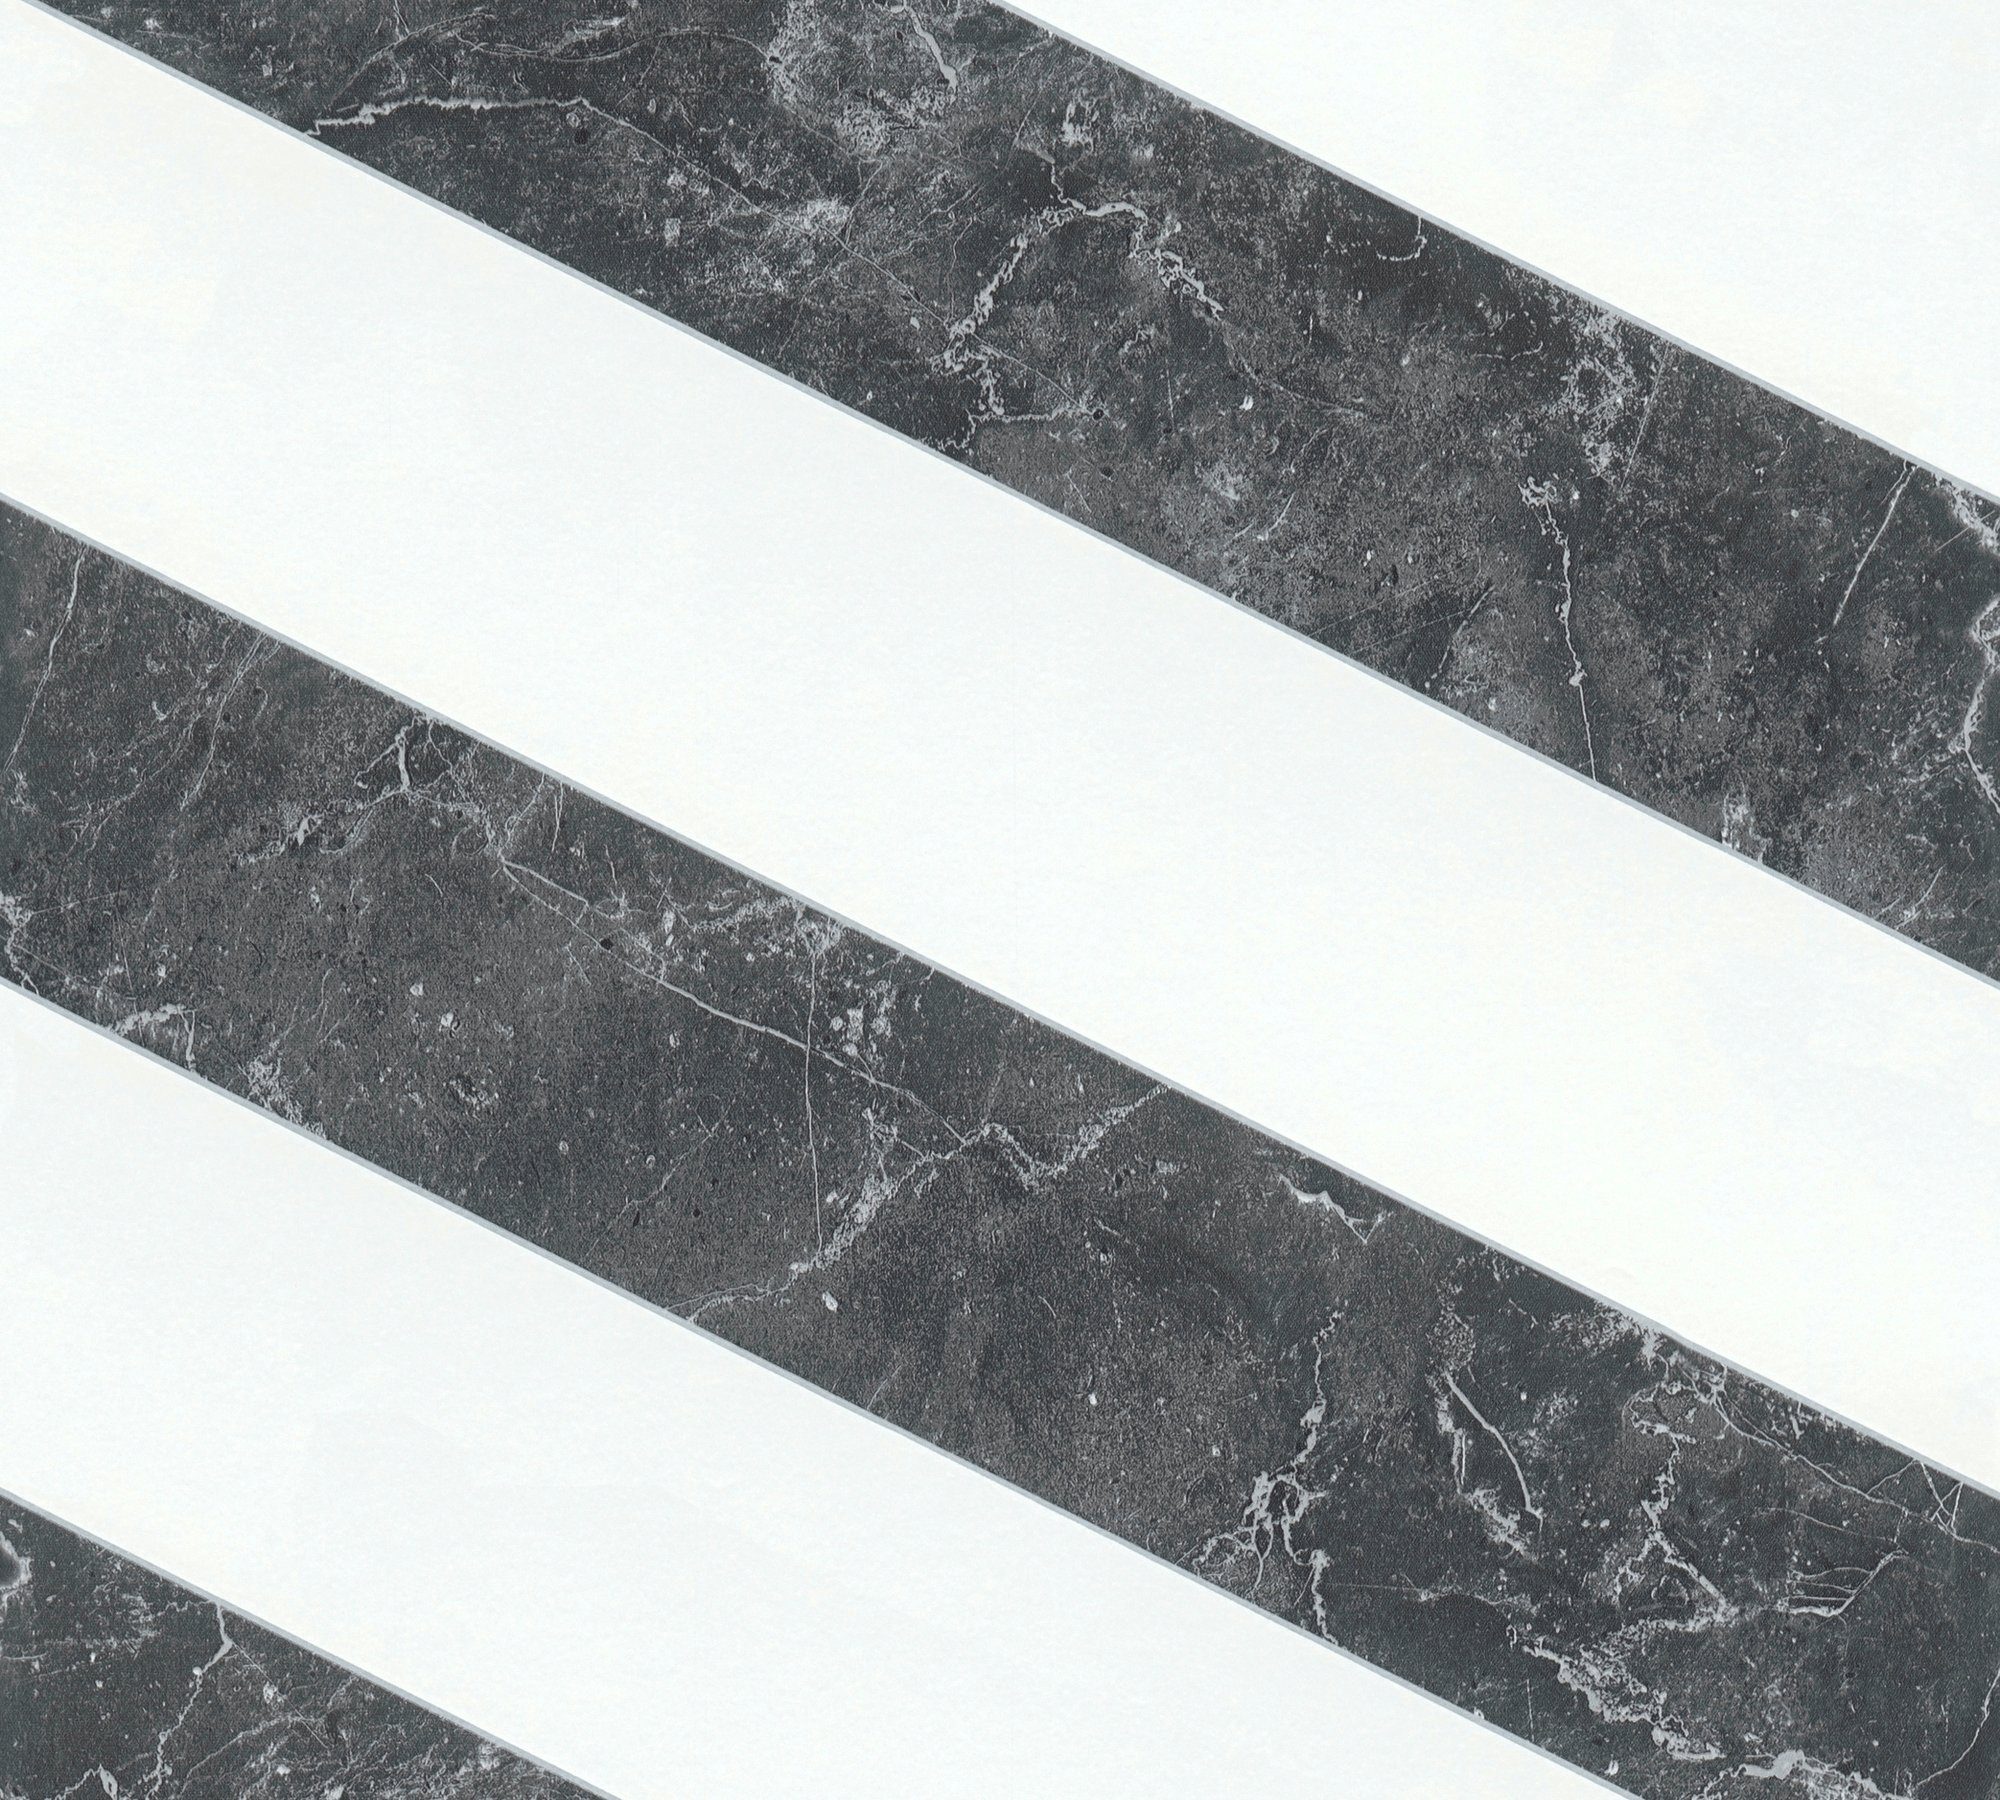 Change gestreift, Streifen, Tapete good, BY METROPOLIS Marmor LIVING Vliestapete A.S. Création Glänzend schwarz/weiß/silberfarben MICHALSKY Modern Glatt Marble, is Designertapete